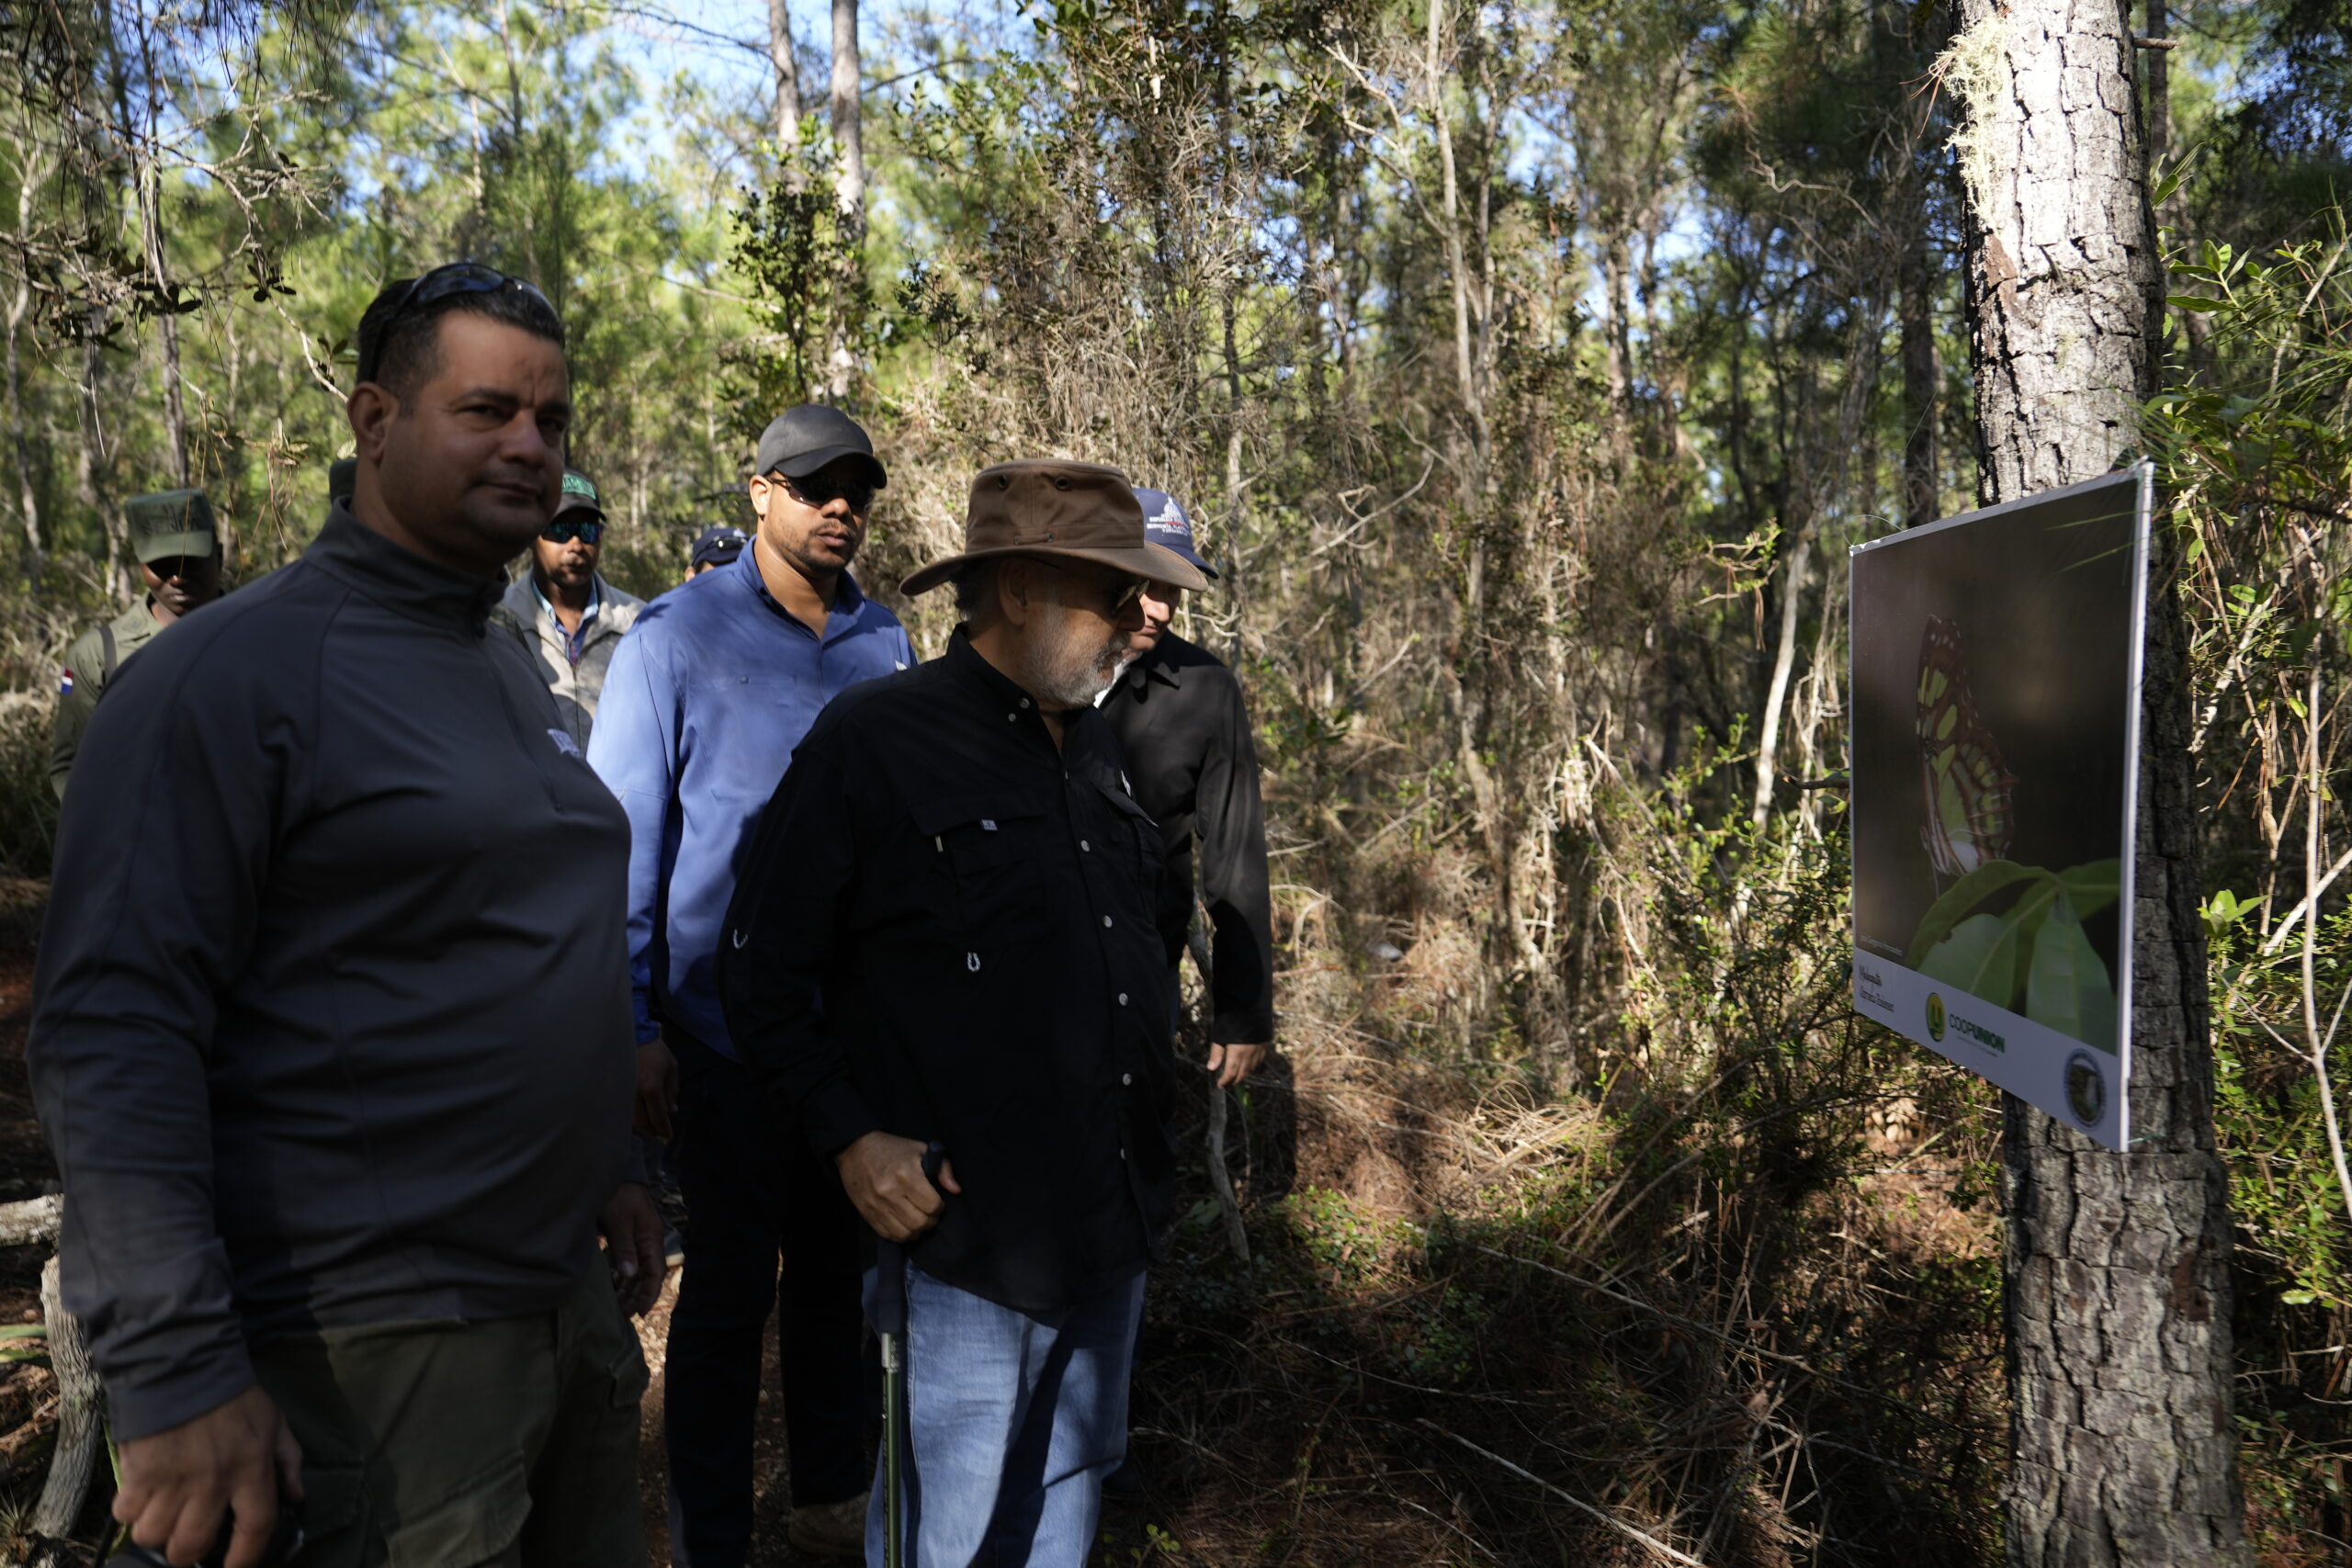 Ceara Hatton inspecciona readecuación de infraestructura en áreas protegidas visitadas por turistas que llegan a Pedernales